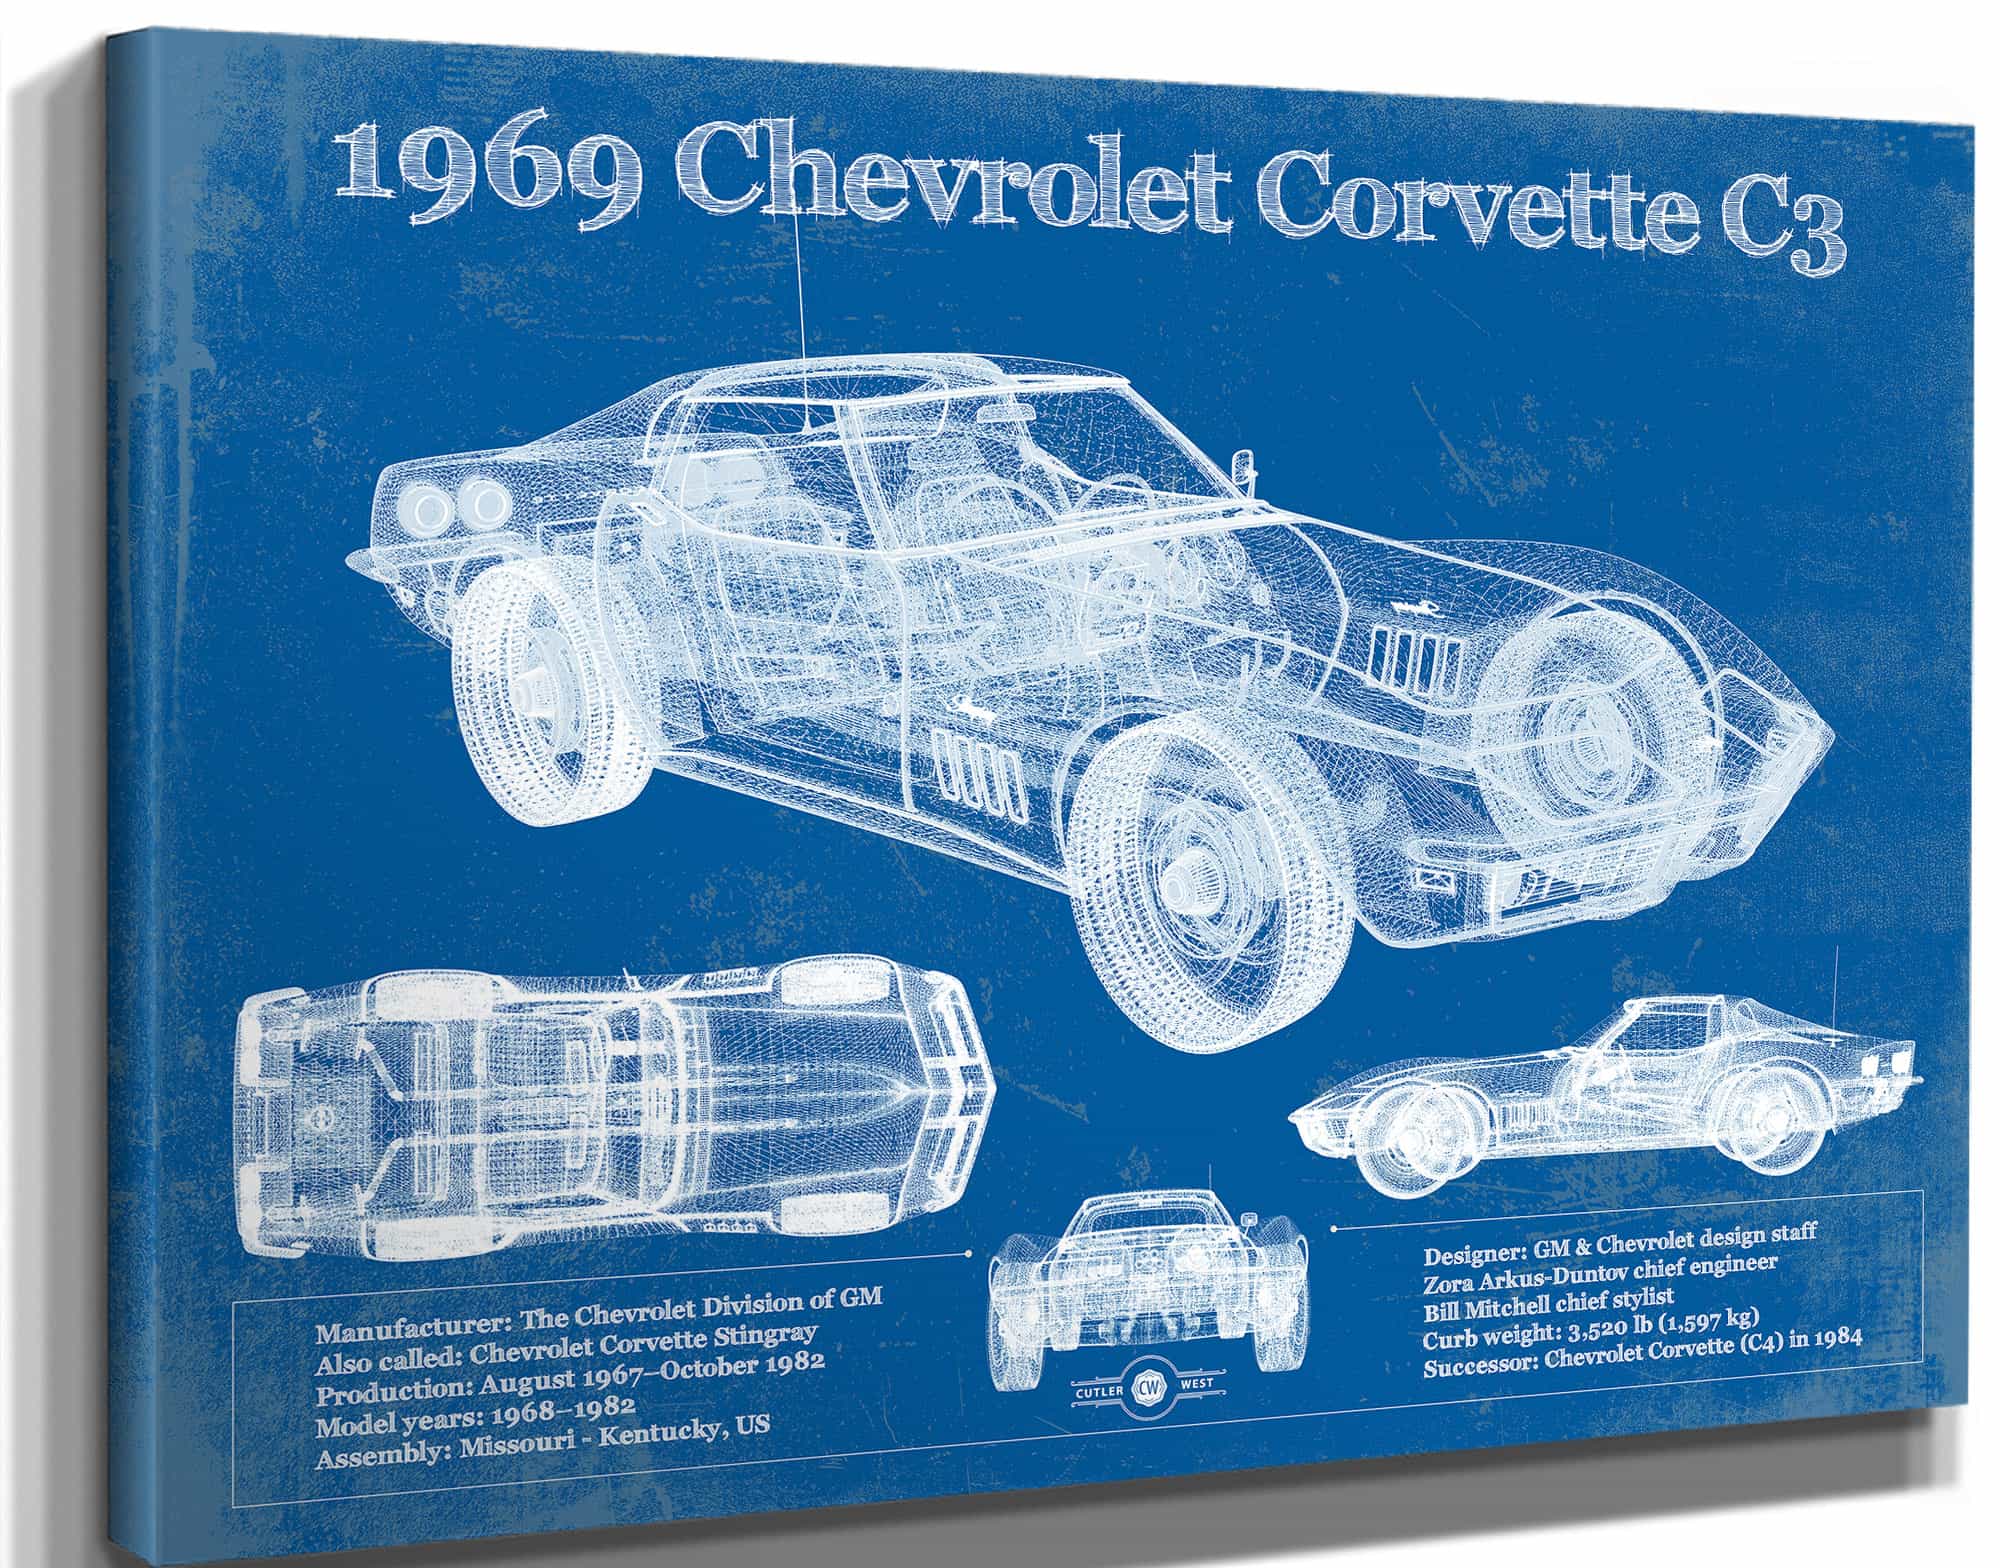 1969 Chevrolet Corvette C3 Blueprint Vintage Auto Print